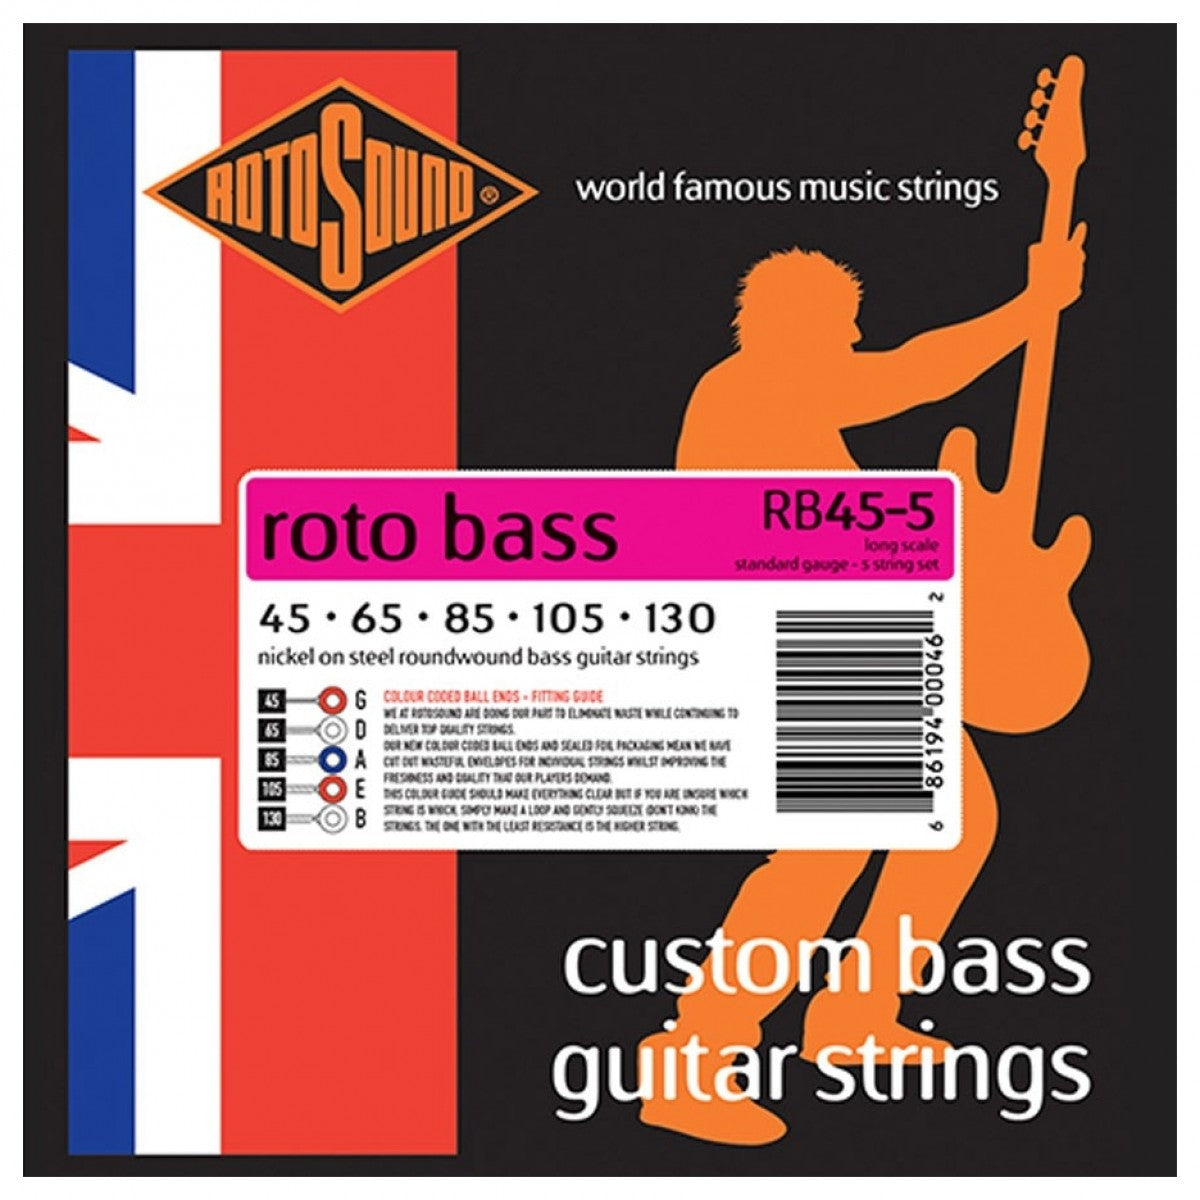 Rotosound RB45-5 Roto Bass bassokitaran kielet 045-130